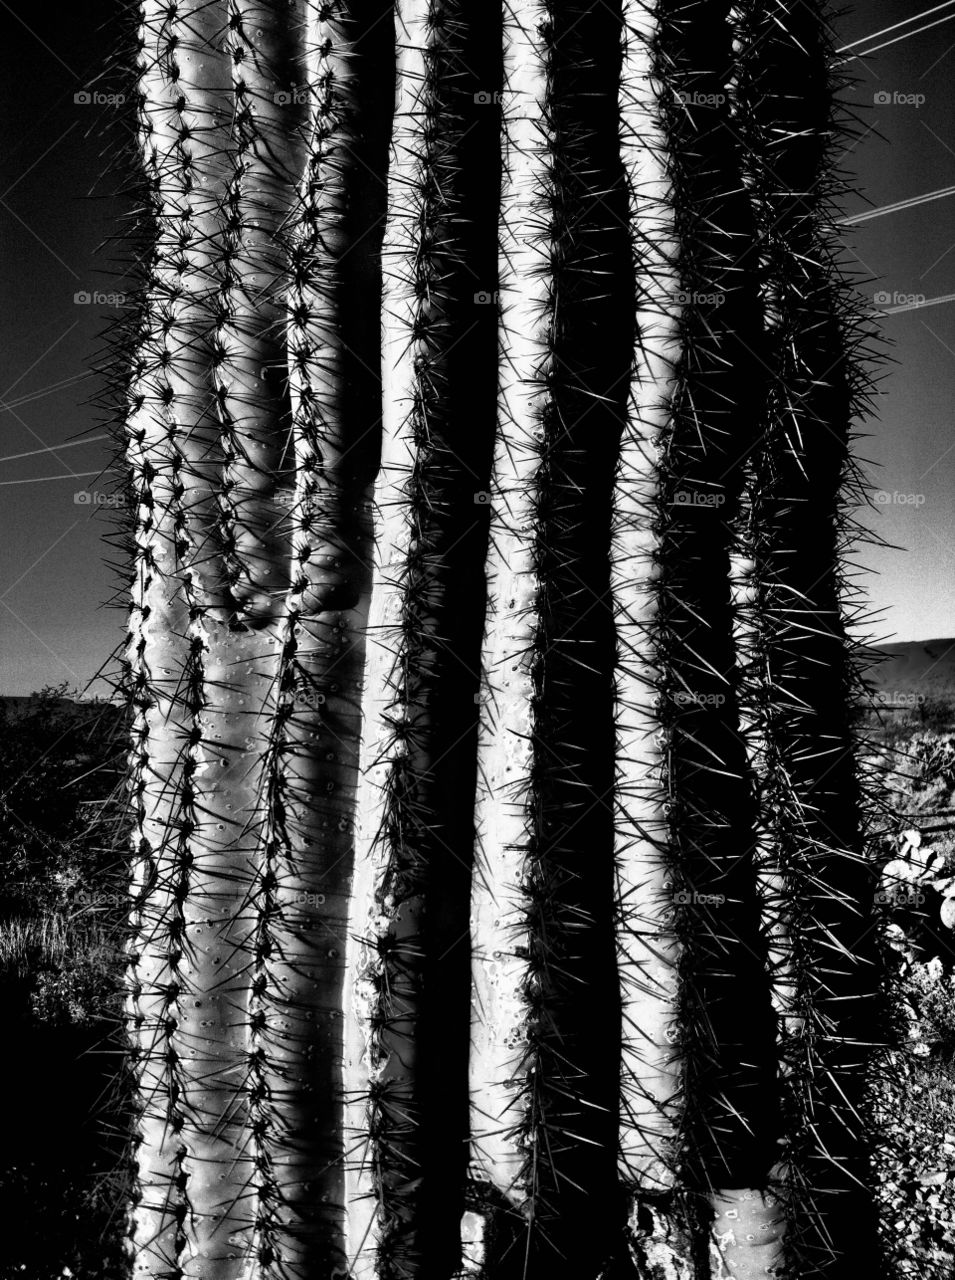 Cactus trunk